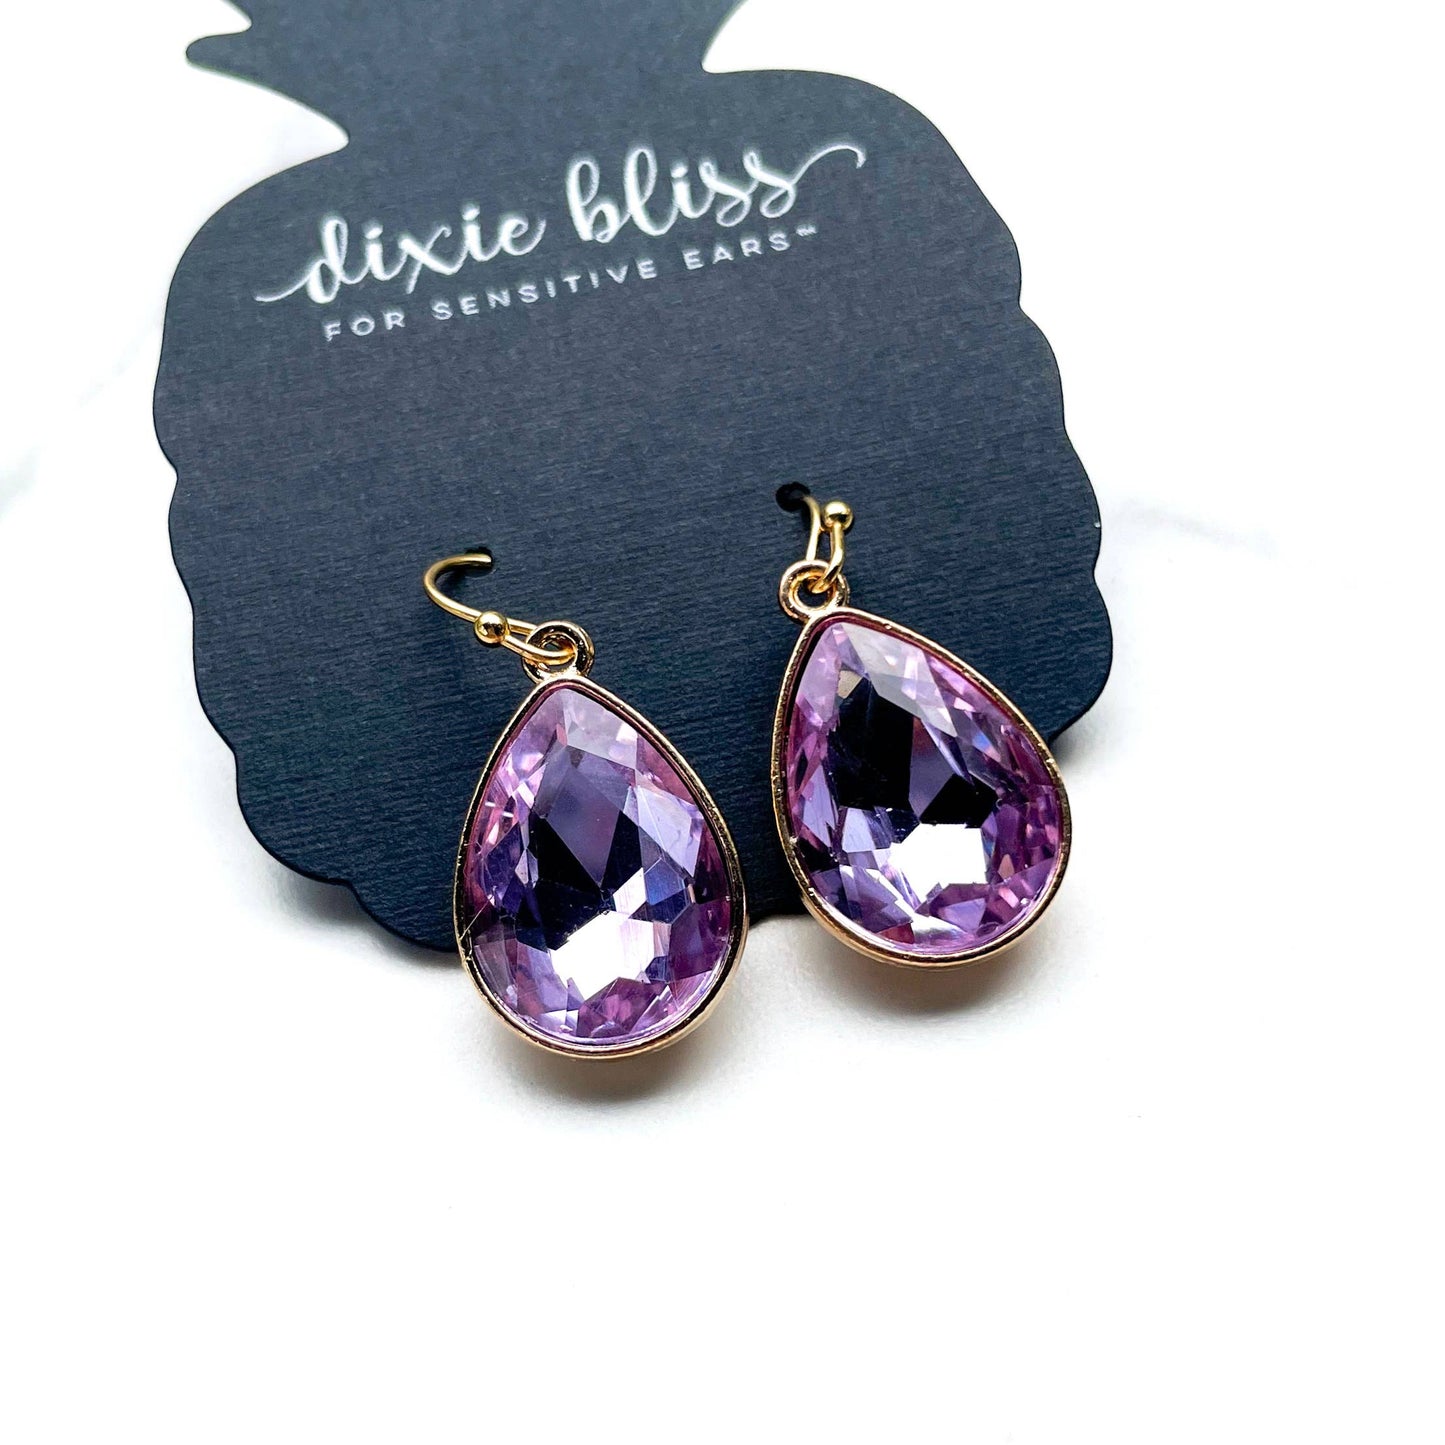 Lilac Drops earrings